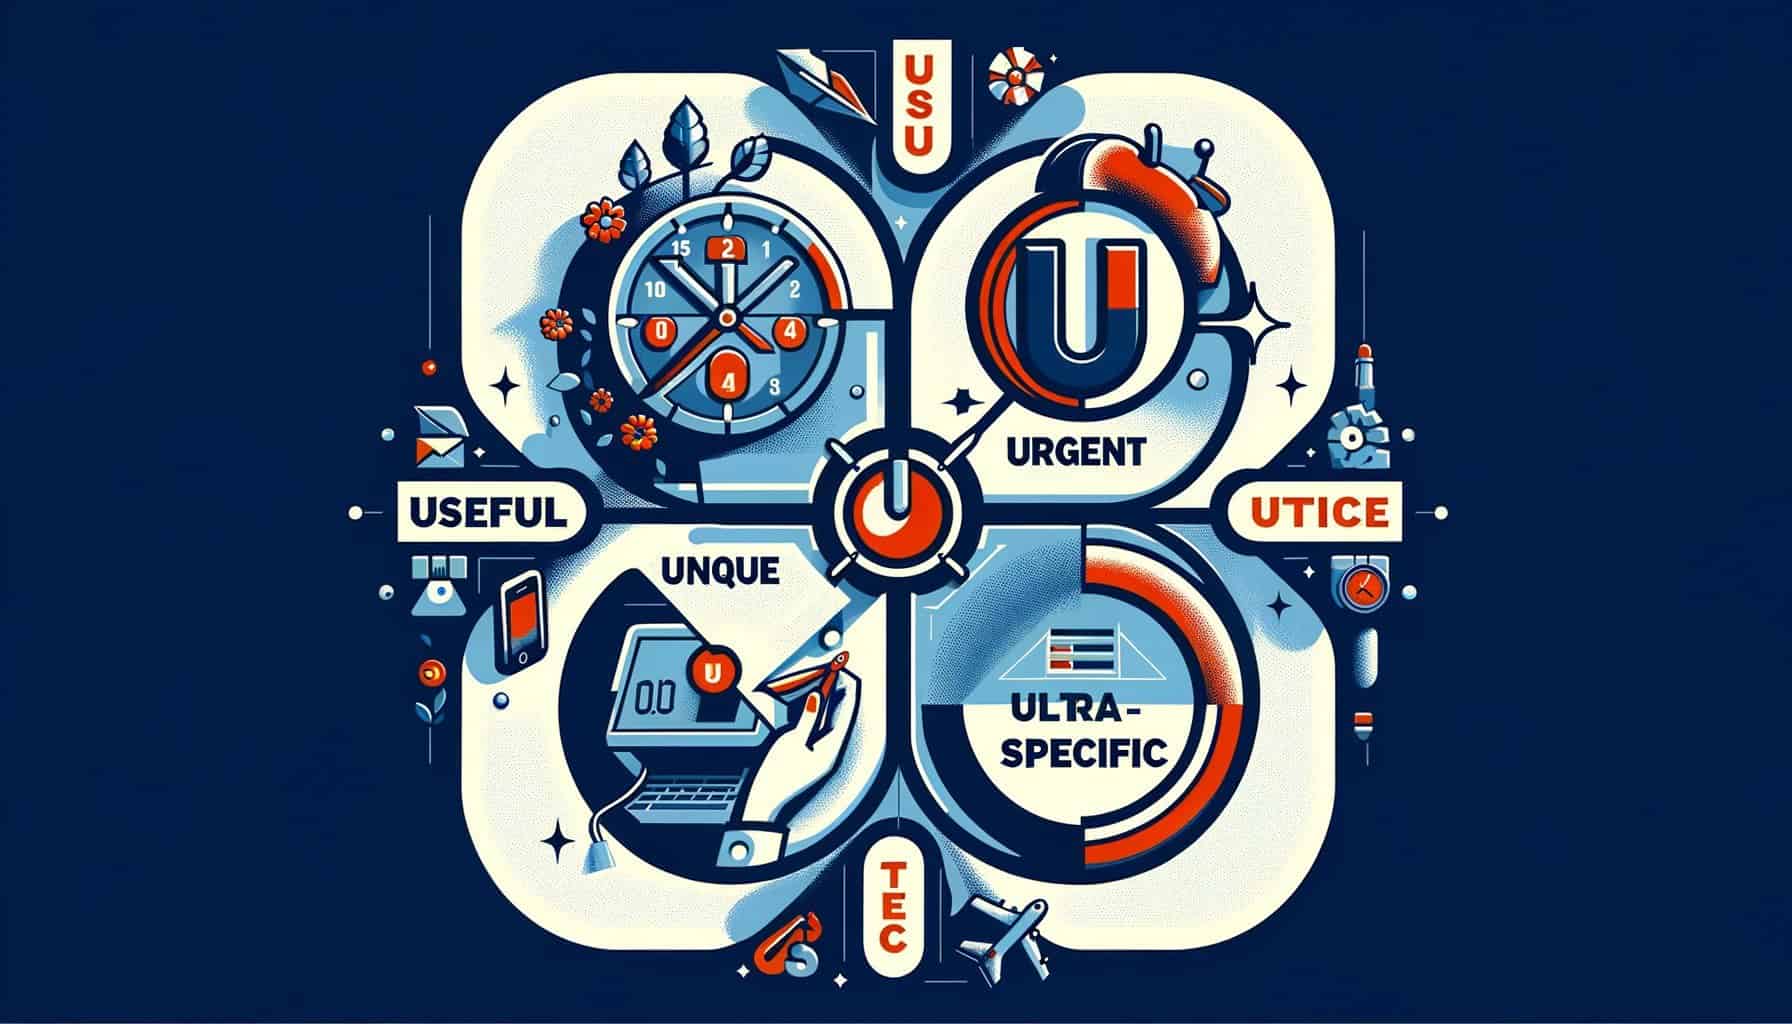 Формула за продаващ текст The 4 U’s (Useful – Urgent – Unique – Ultra – Specific)